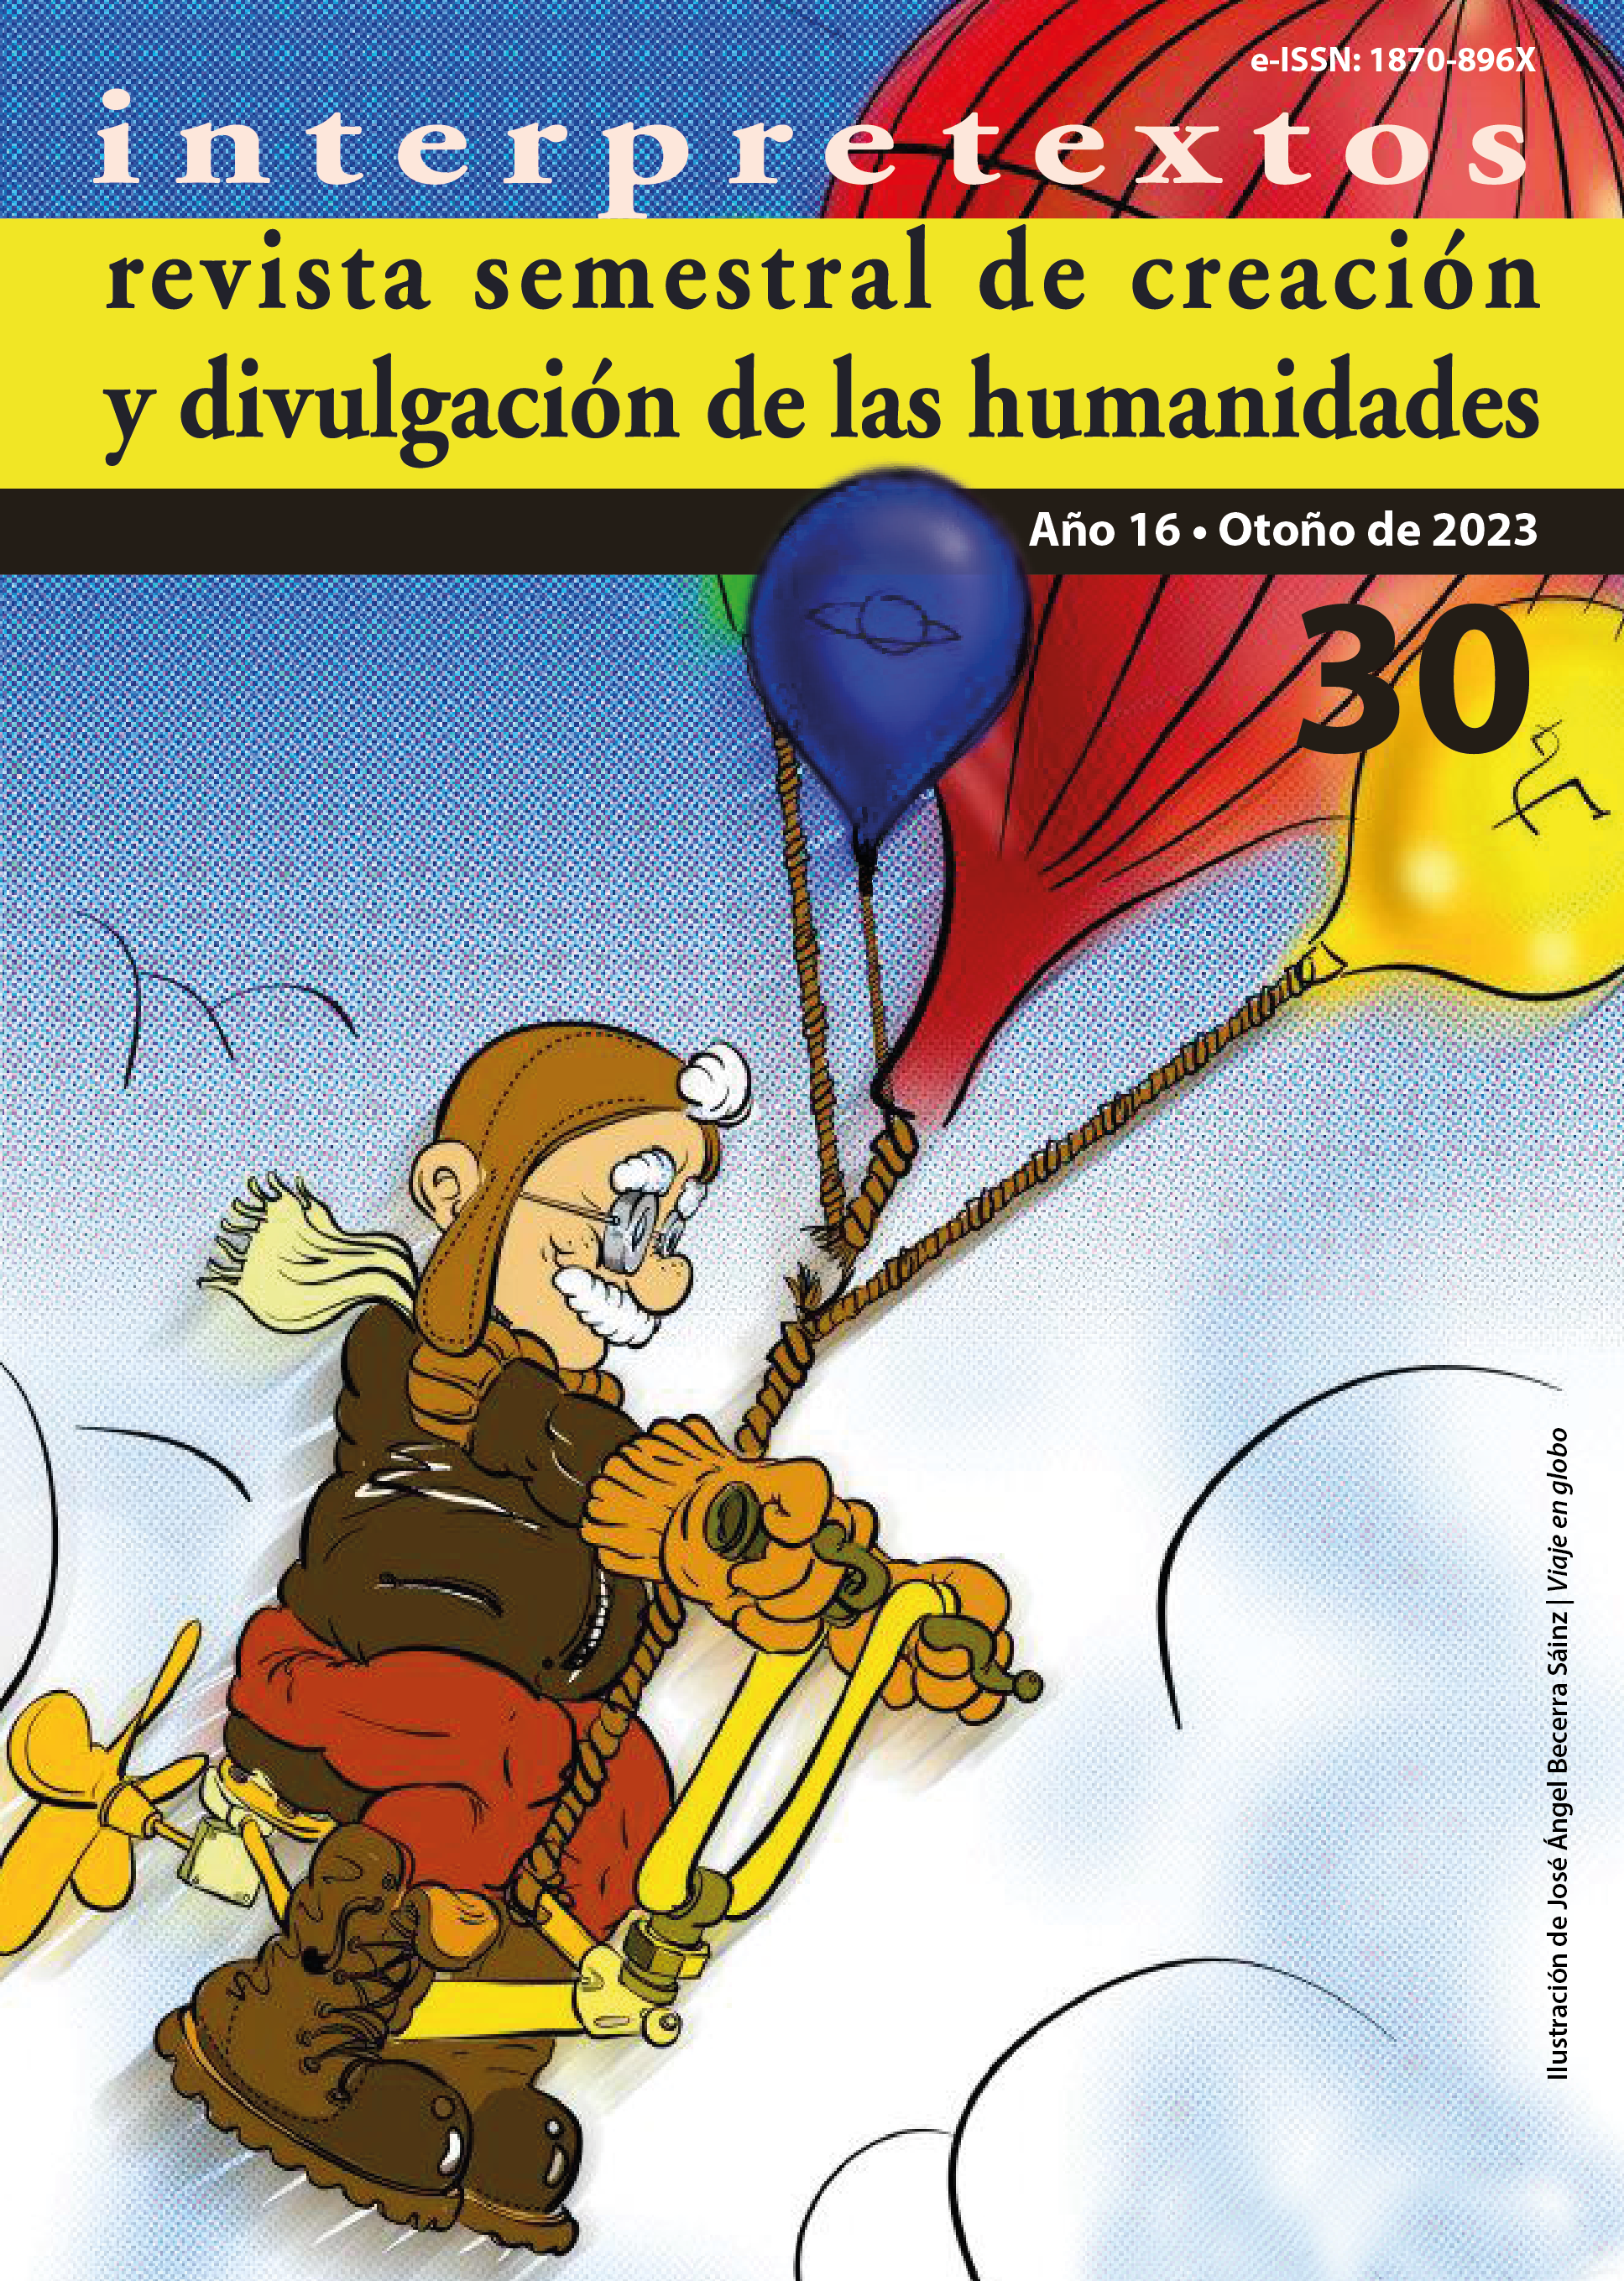 					Ver Vol. 1 Núm. 30 Año (16): Interpretextos, revista semestral de creación y divulgación de las humanidades
				